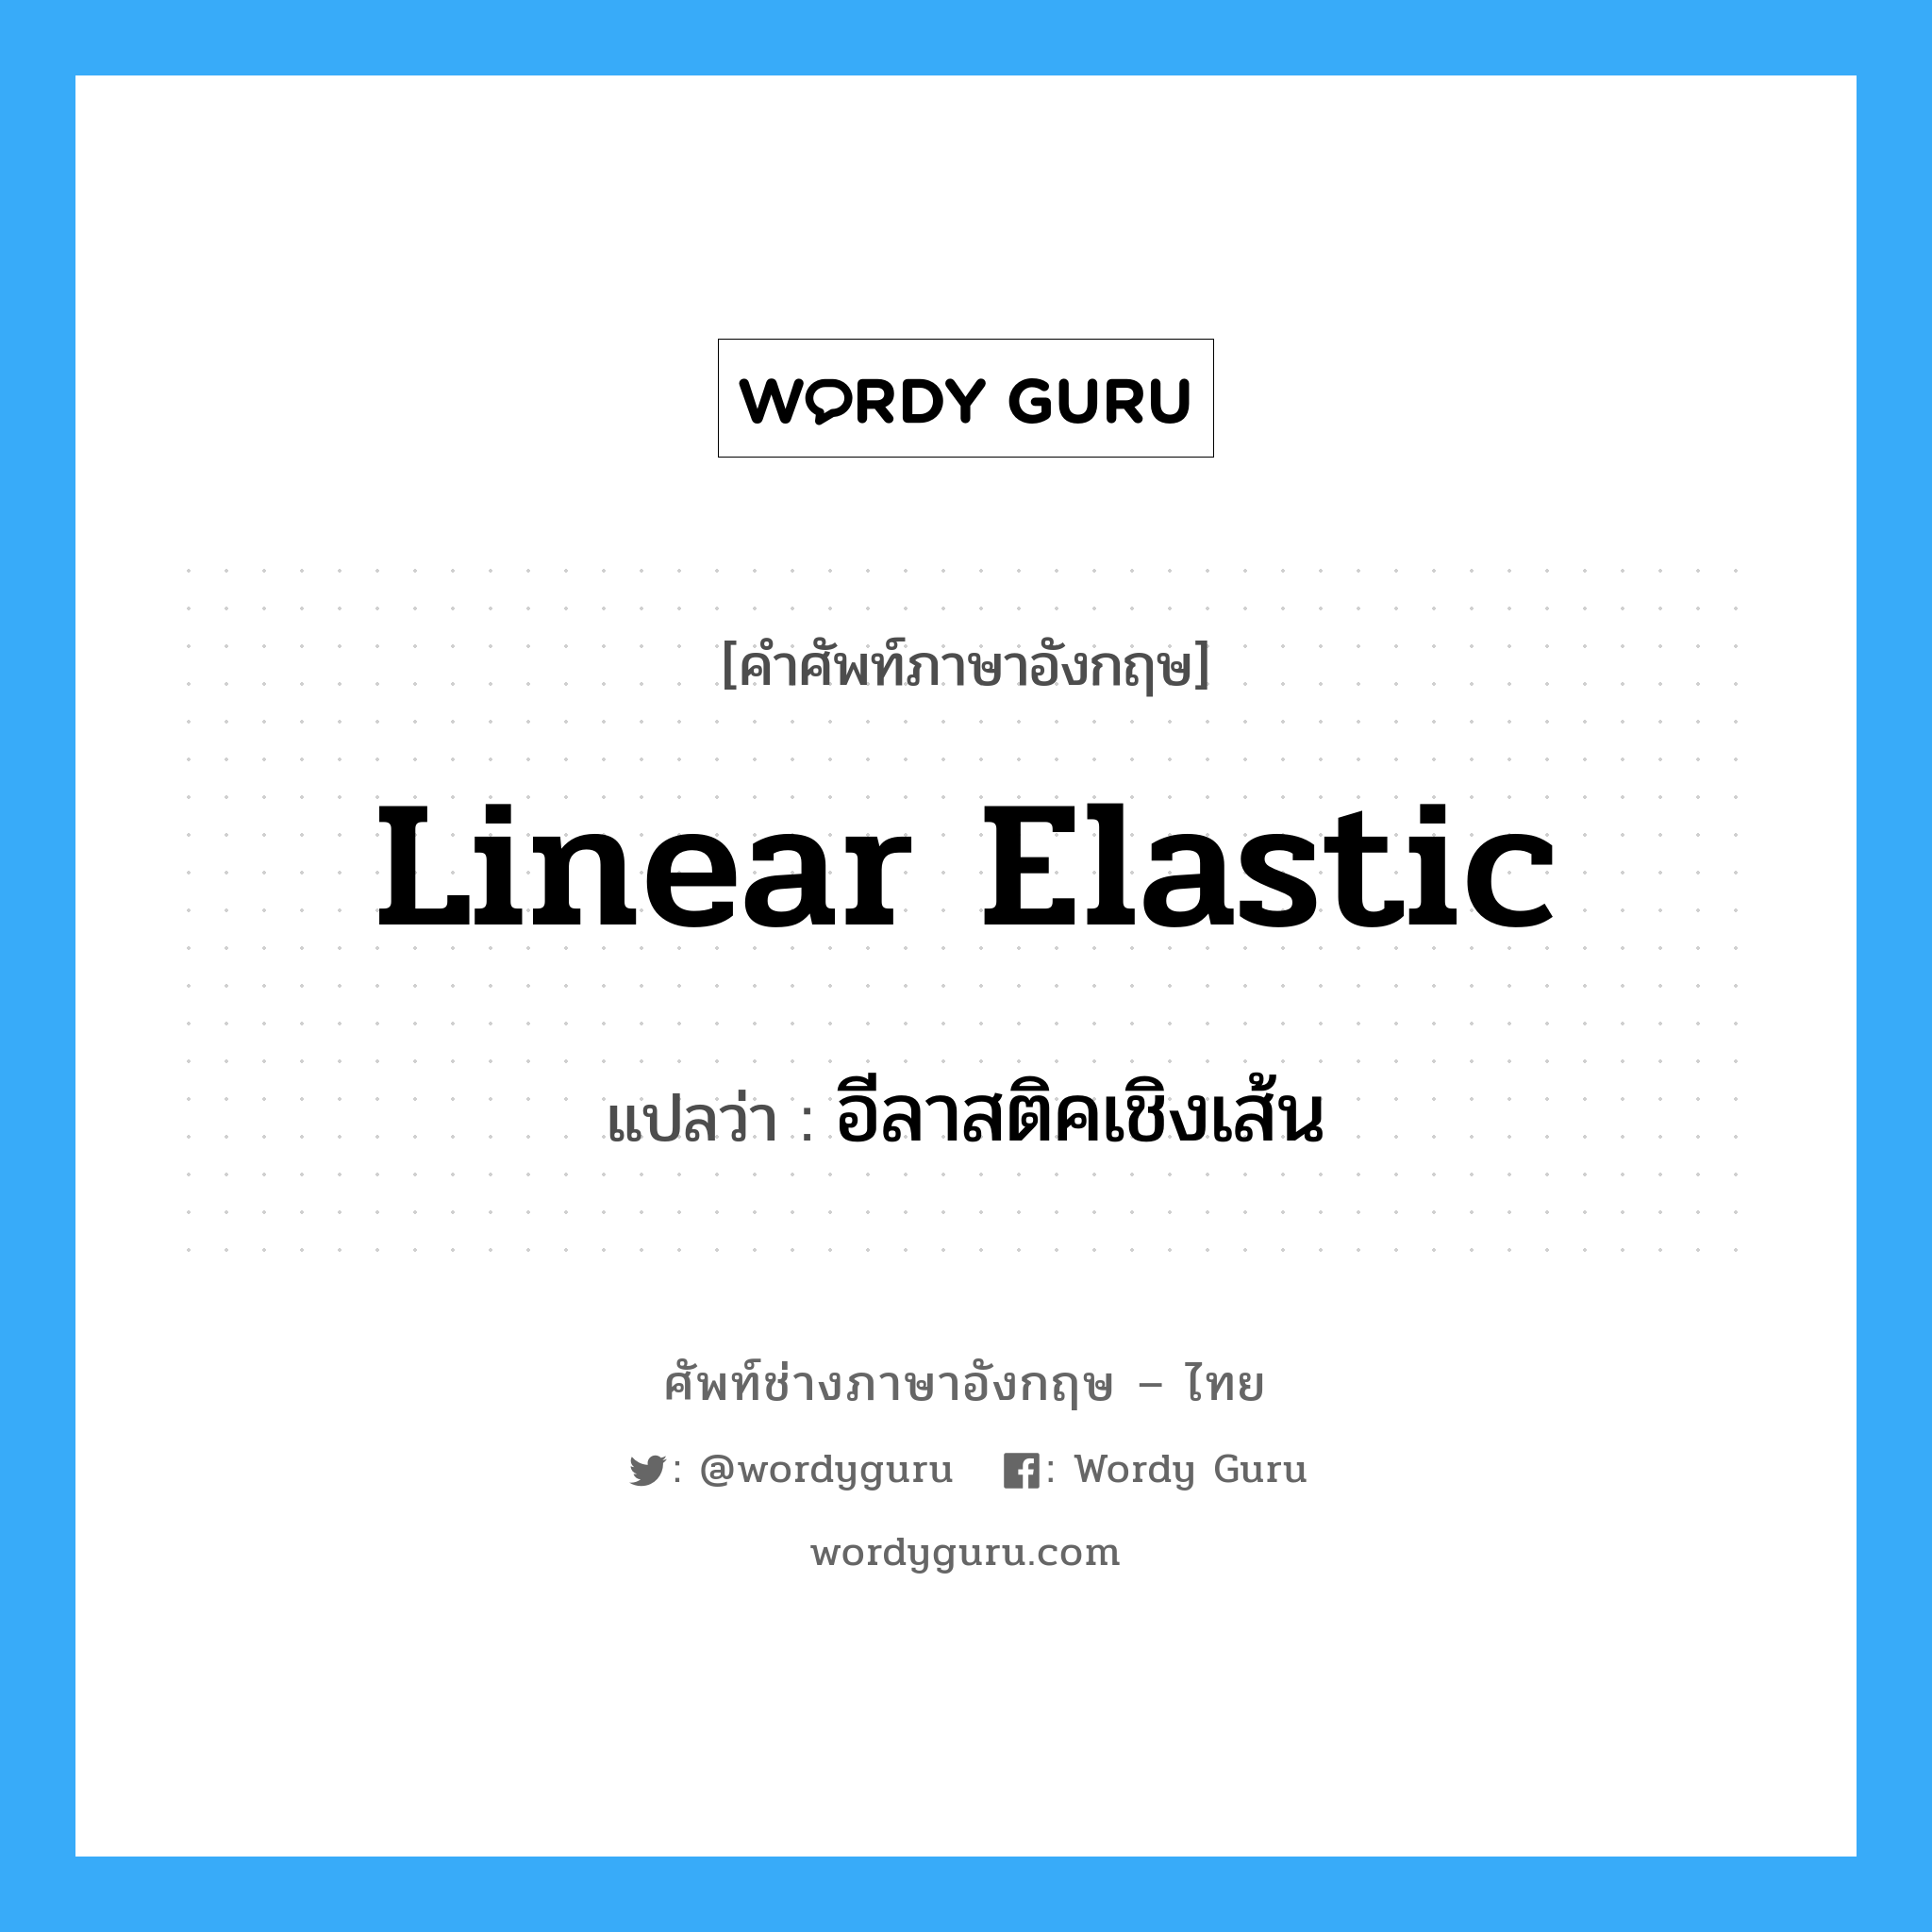 อีลาสติคเชิงเส้น ภาษาอังกฤษ?, คำศัพท์ช่างภาษาอังกฤษ - ไทย อีลาสติคเชิงเส้น คำศัพท์ภาษาอังกฤษ อีลาสติคเชิงเส้น แปลว่า Linear Elastic